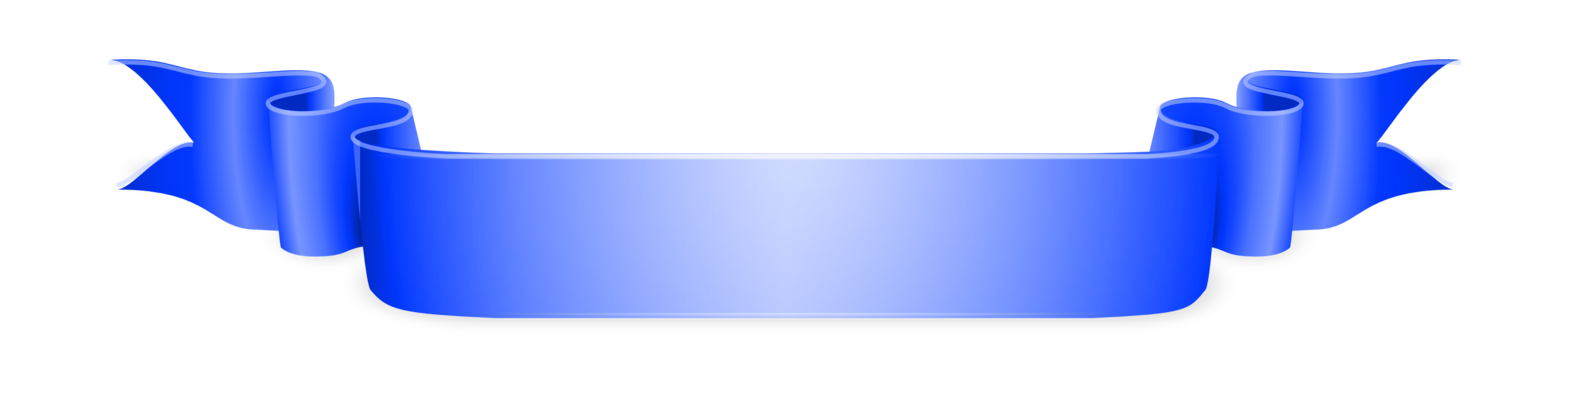 Blauw lintvrij PNG-beeld